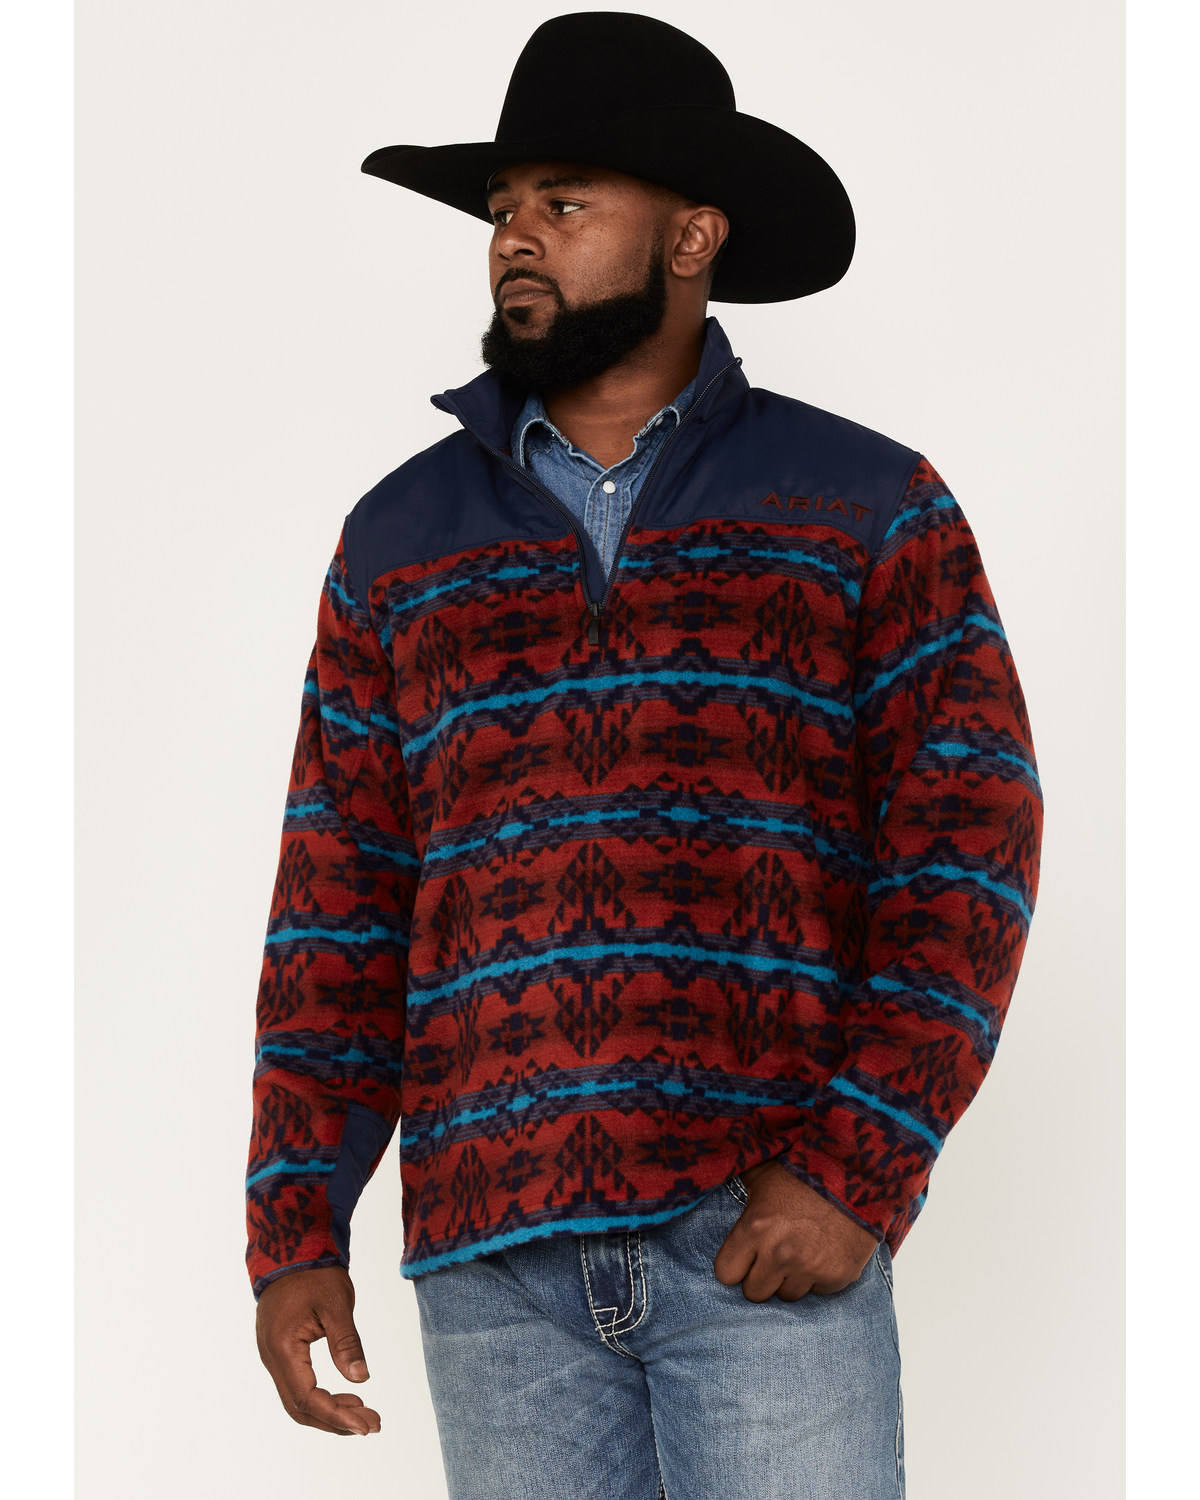 Ariat Men's Ocean Depths Southwestern Print Basis 2.0 1/4 Zip Front Fleece Pullover